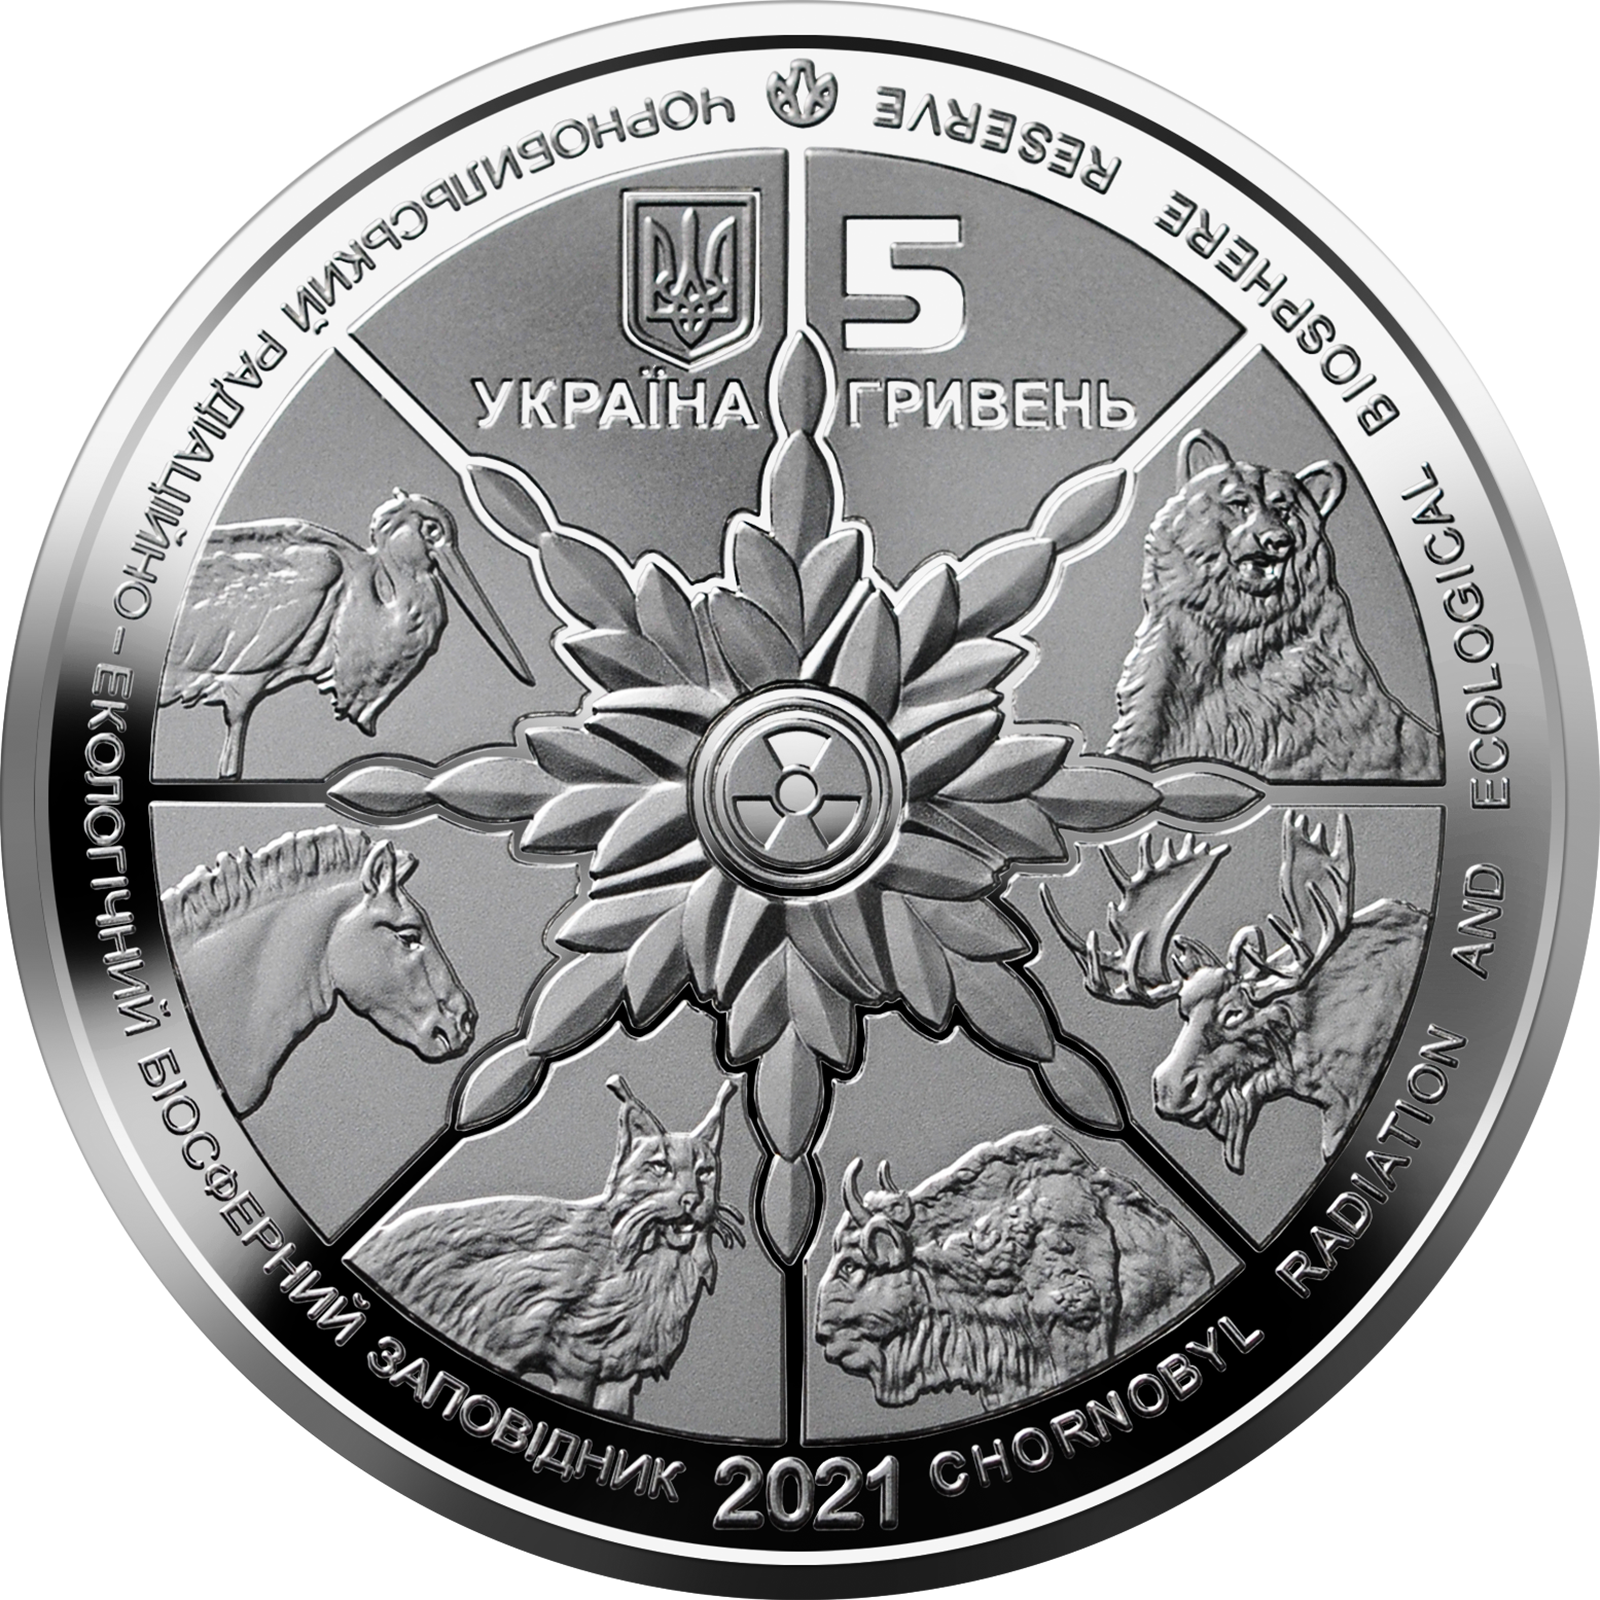 Сегодня НБУ вводит в оборот новую монету номиналом 5 грн